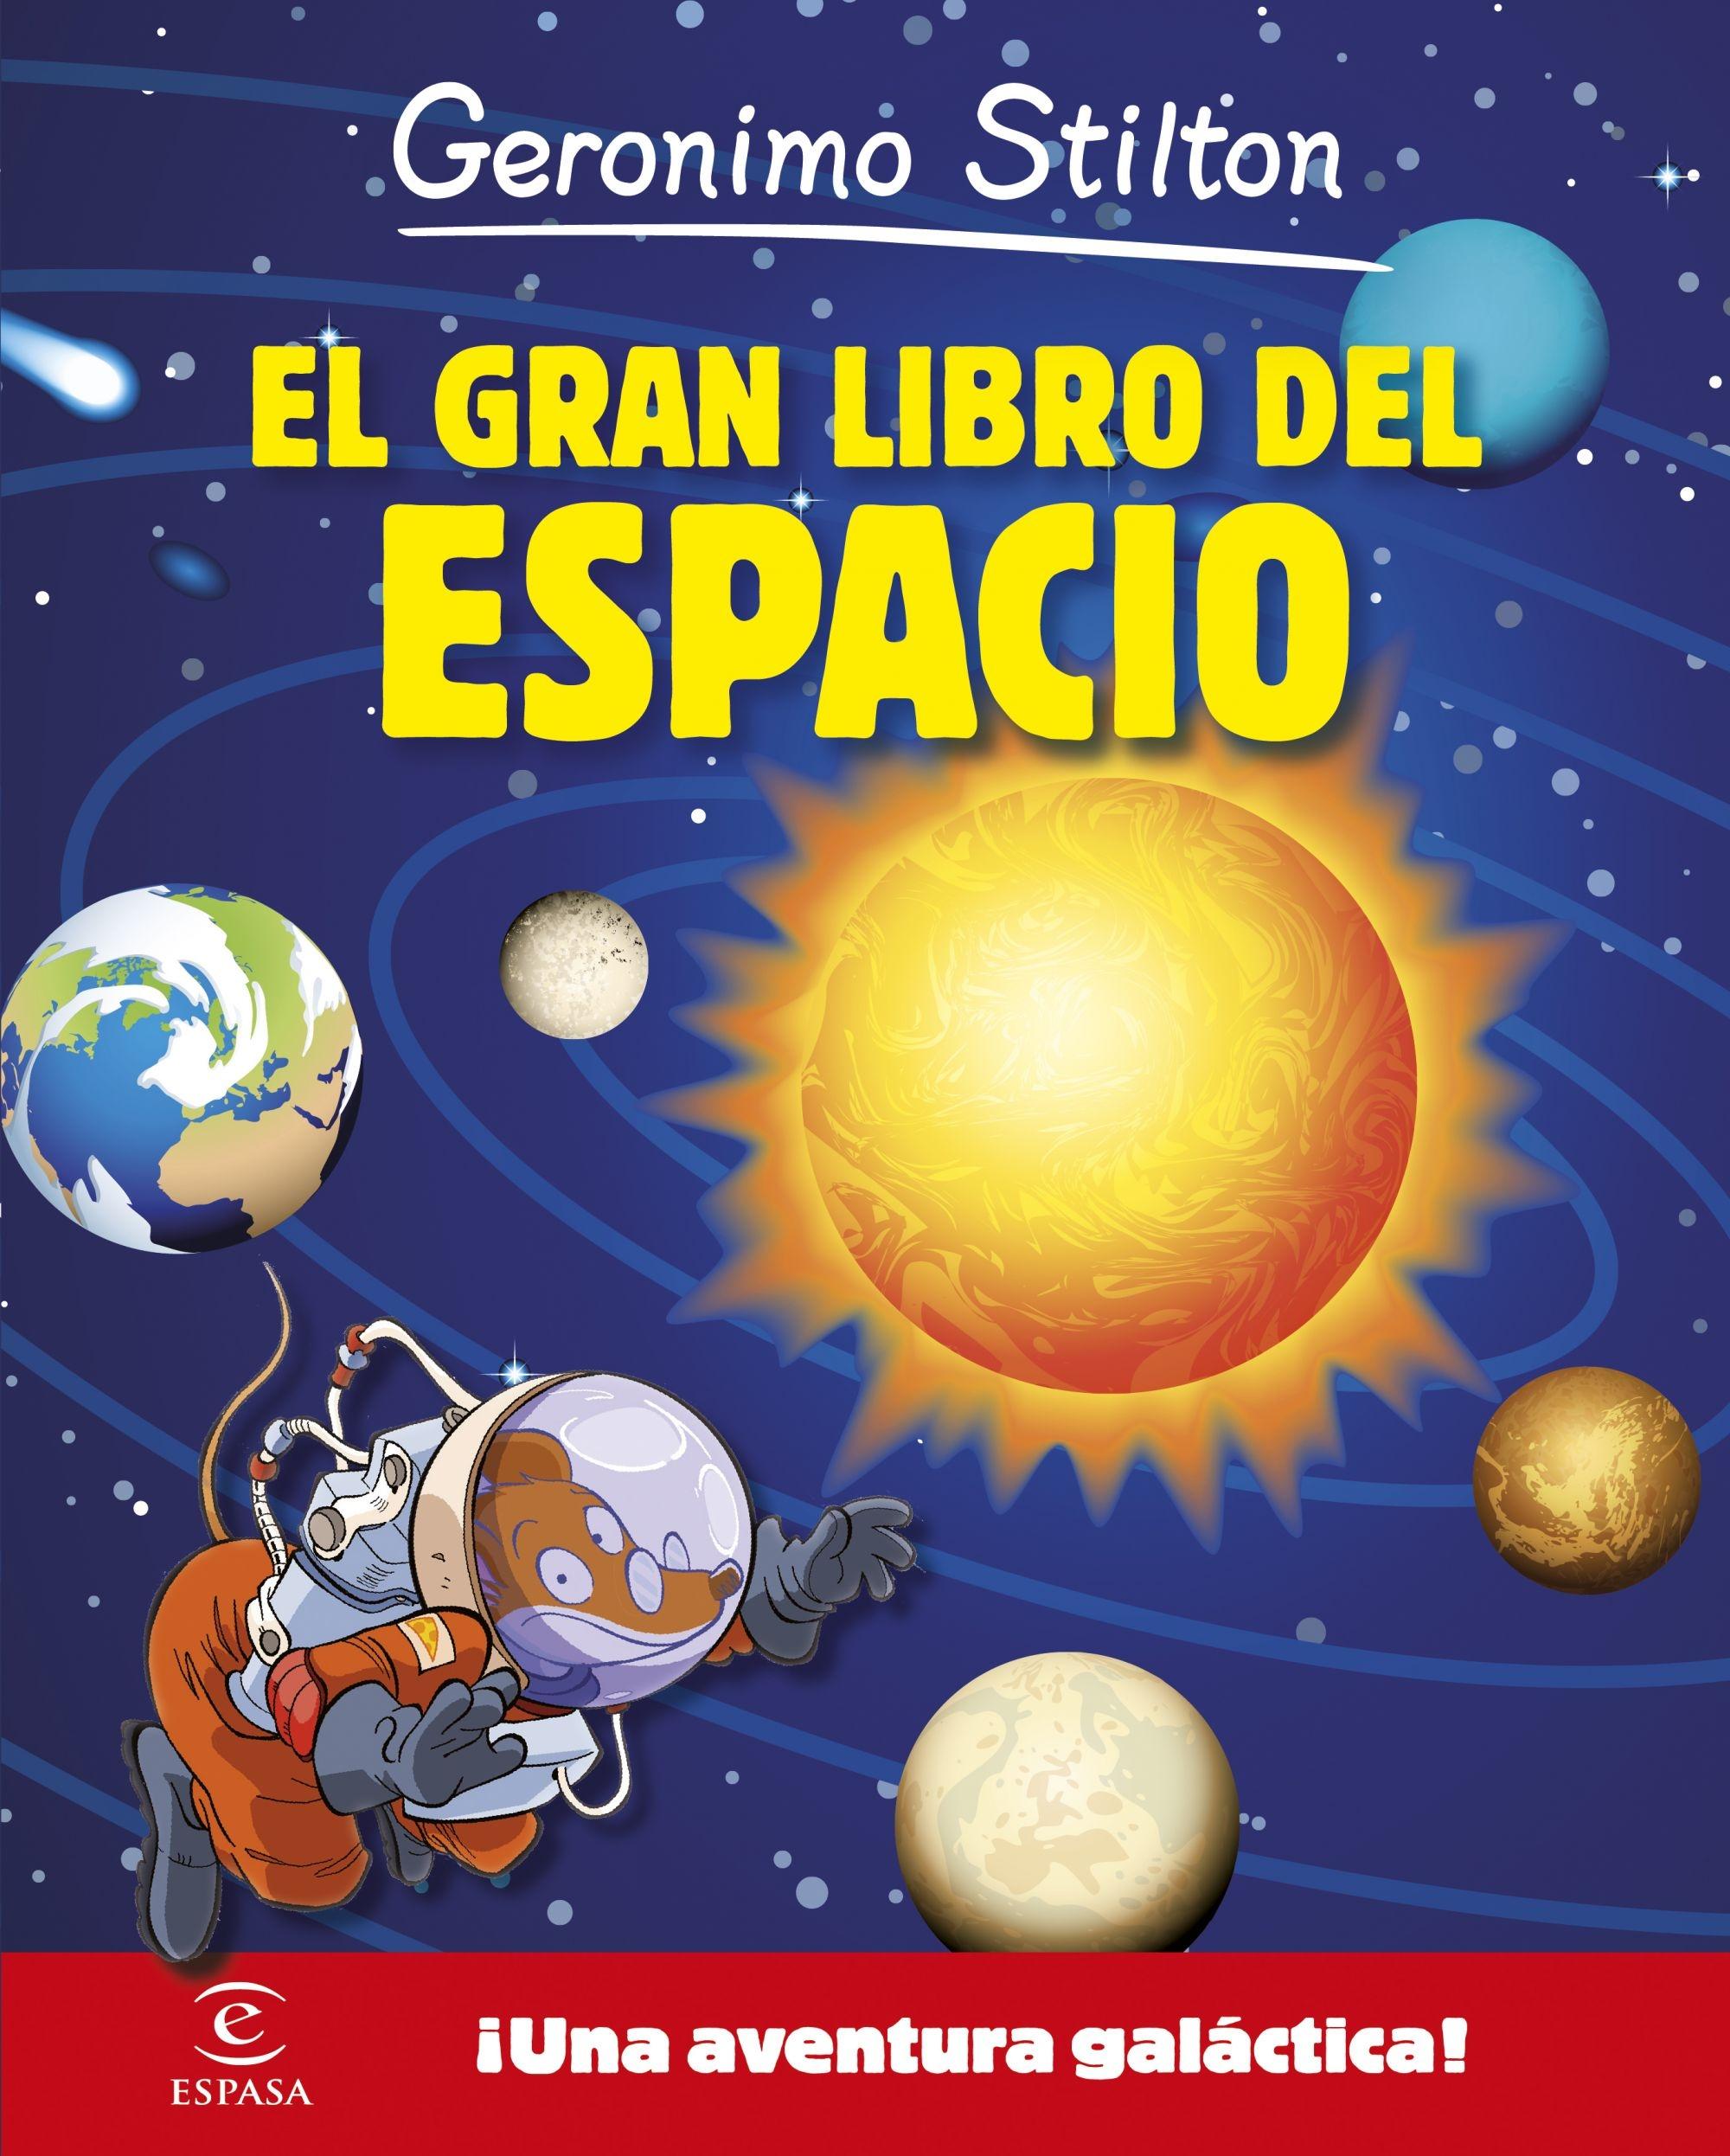 Geronimo Stilton. el Gran Libro del Espacio "¡Una Aventura Galáctica!"